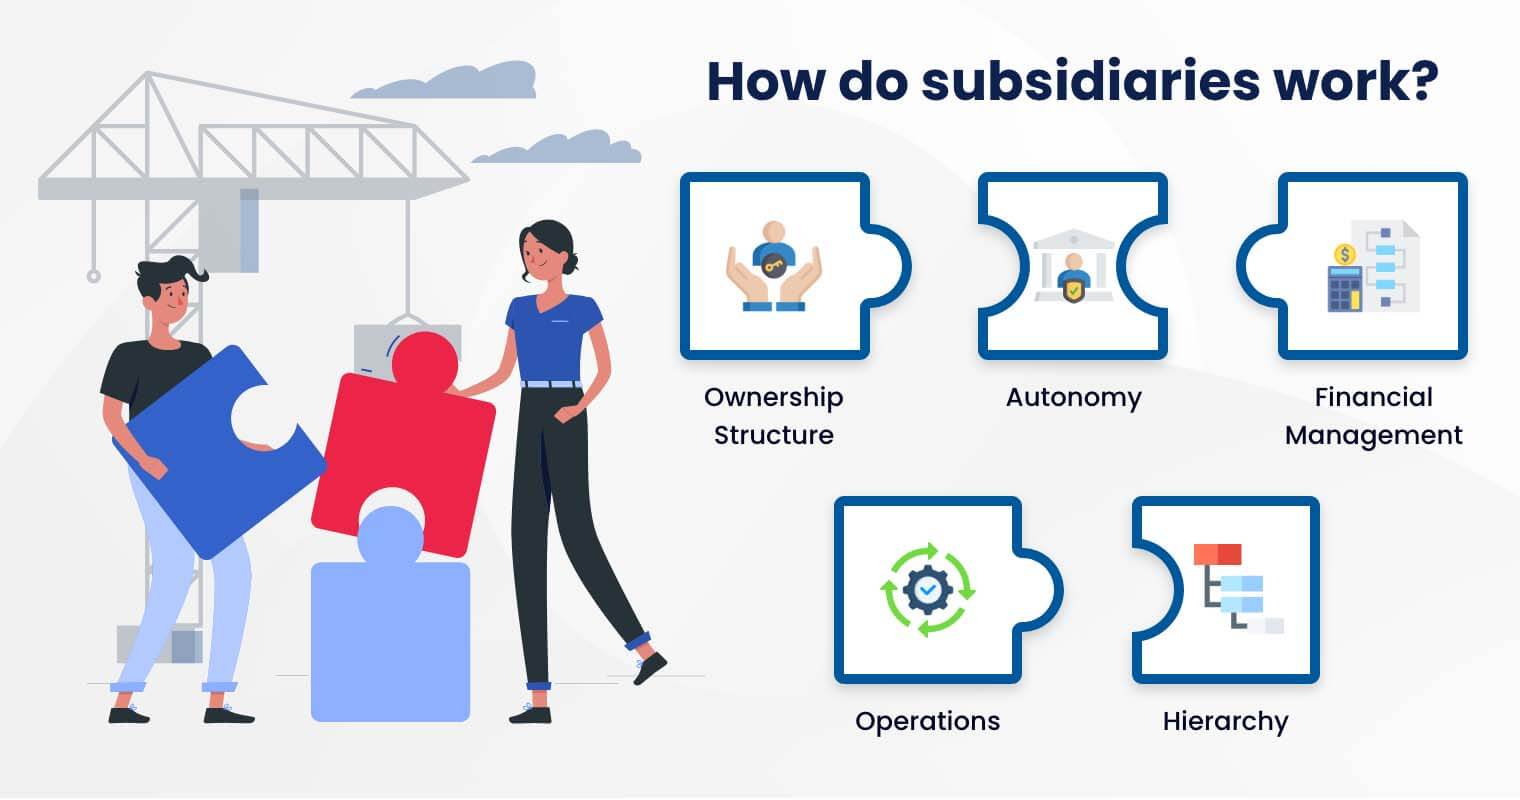 How do subsidiaries work?